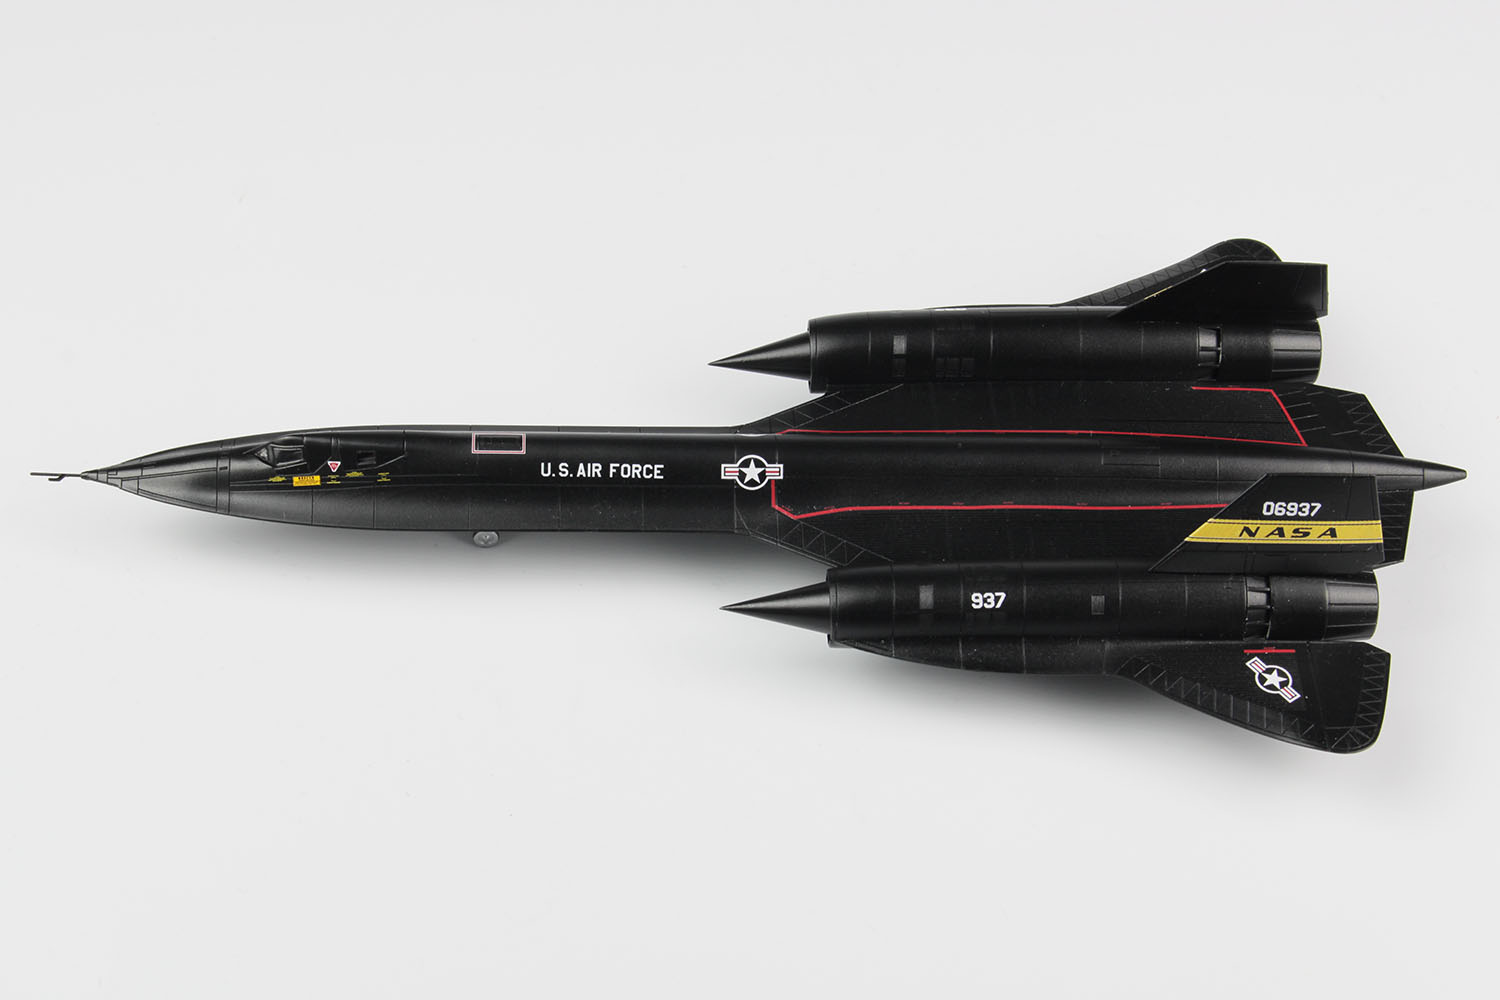 1/144 アメリカ空軍 高高度戦略偵察機 SR-71 ブラックバード 'NASA'